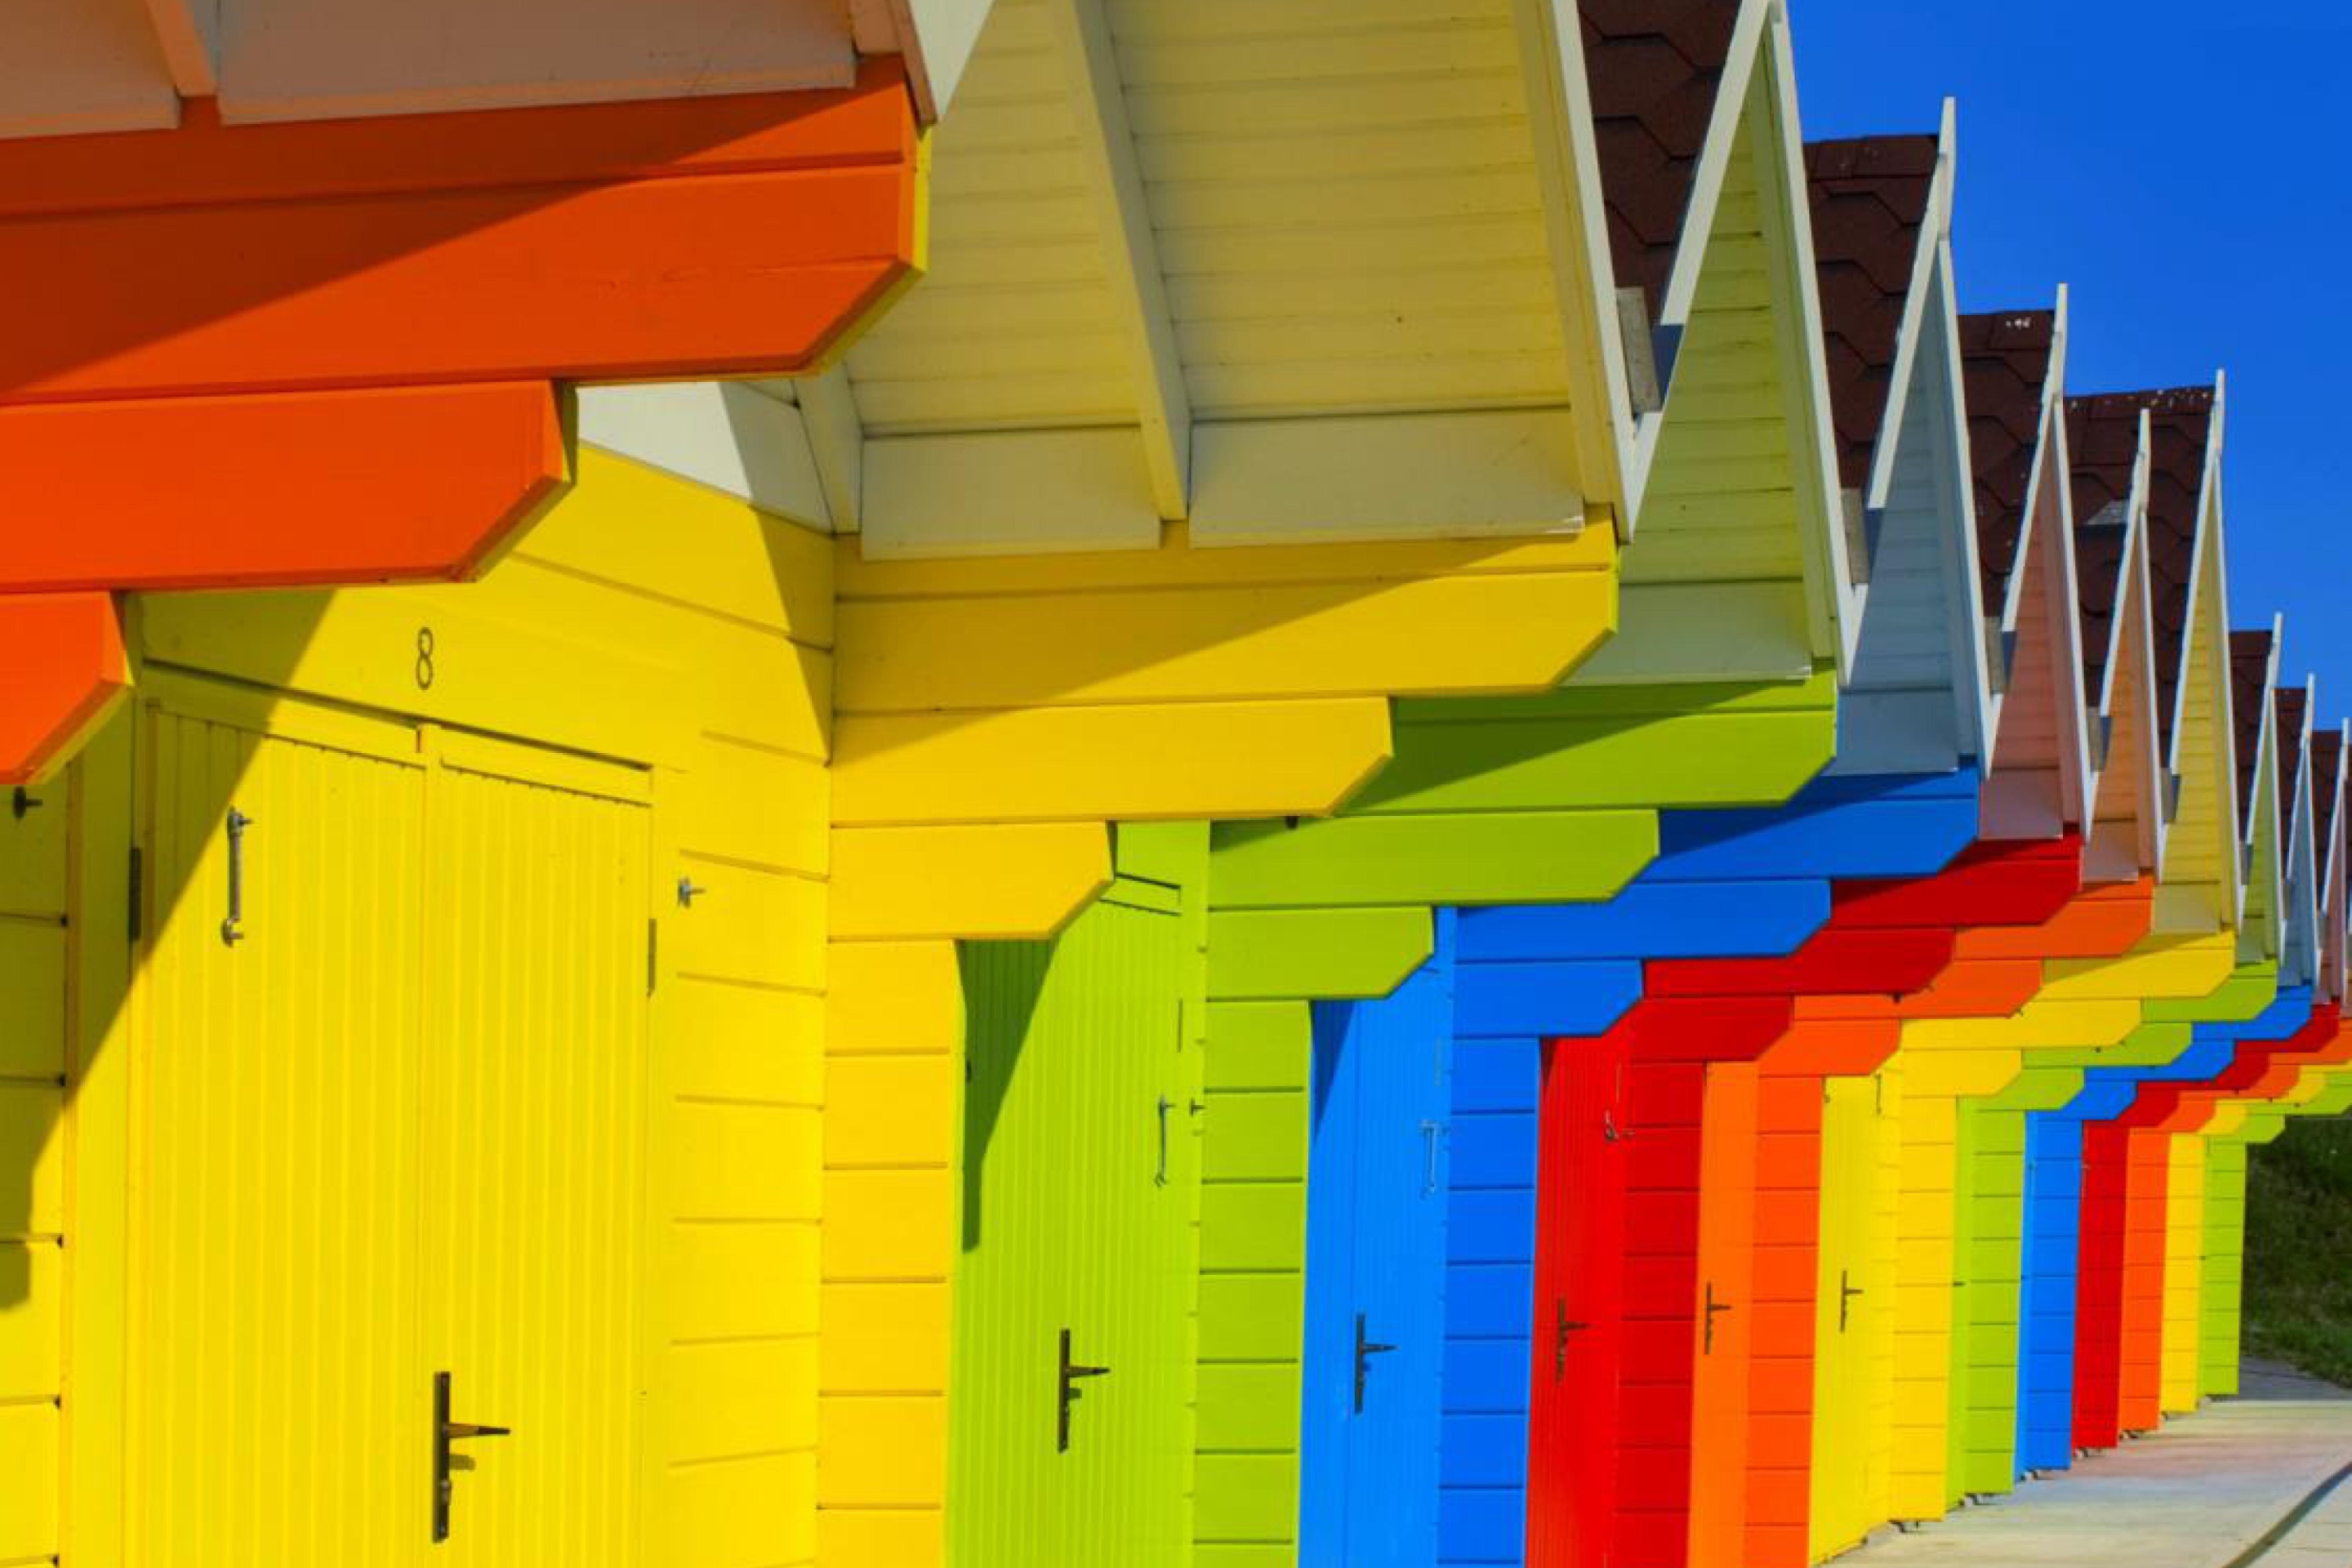 Colorful houses. Разноцветные домики. Разноцветный дом. Разноцветные деревянные дома. Фасад в разноцветных тонах.